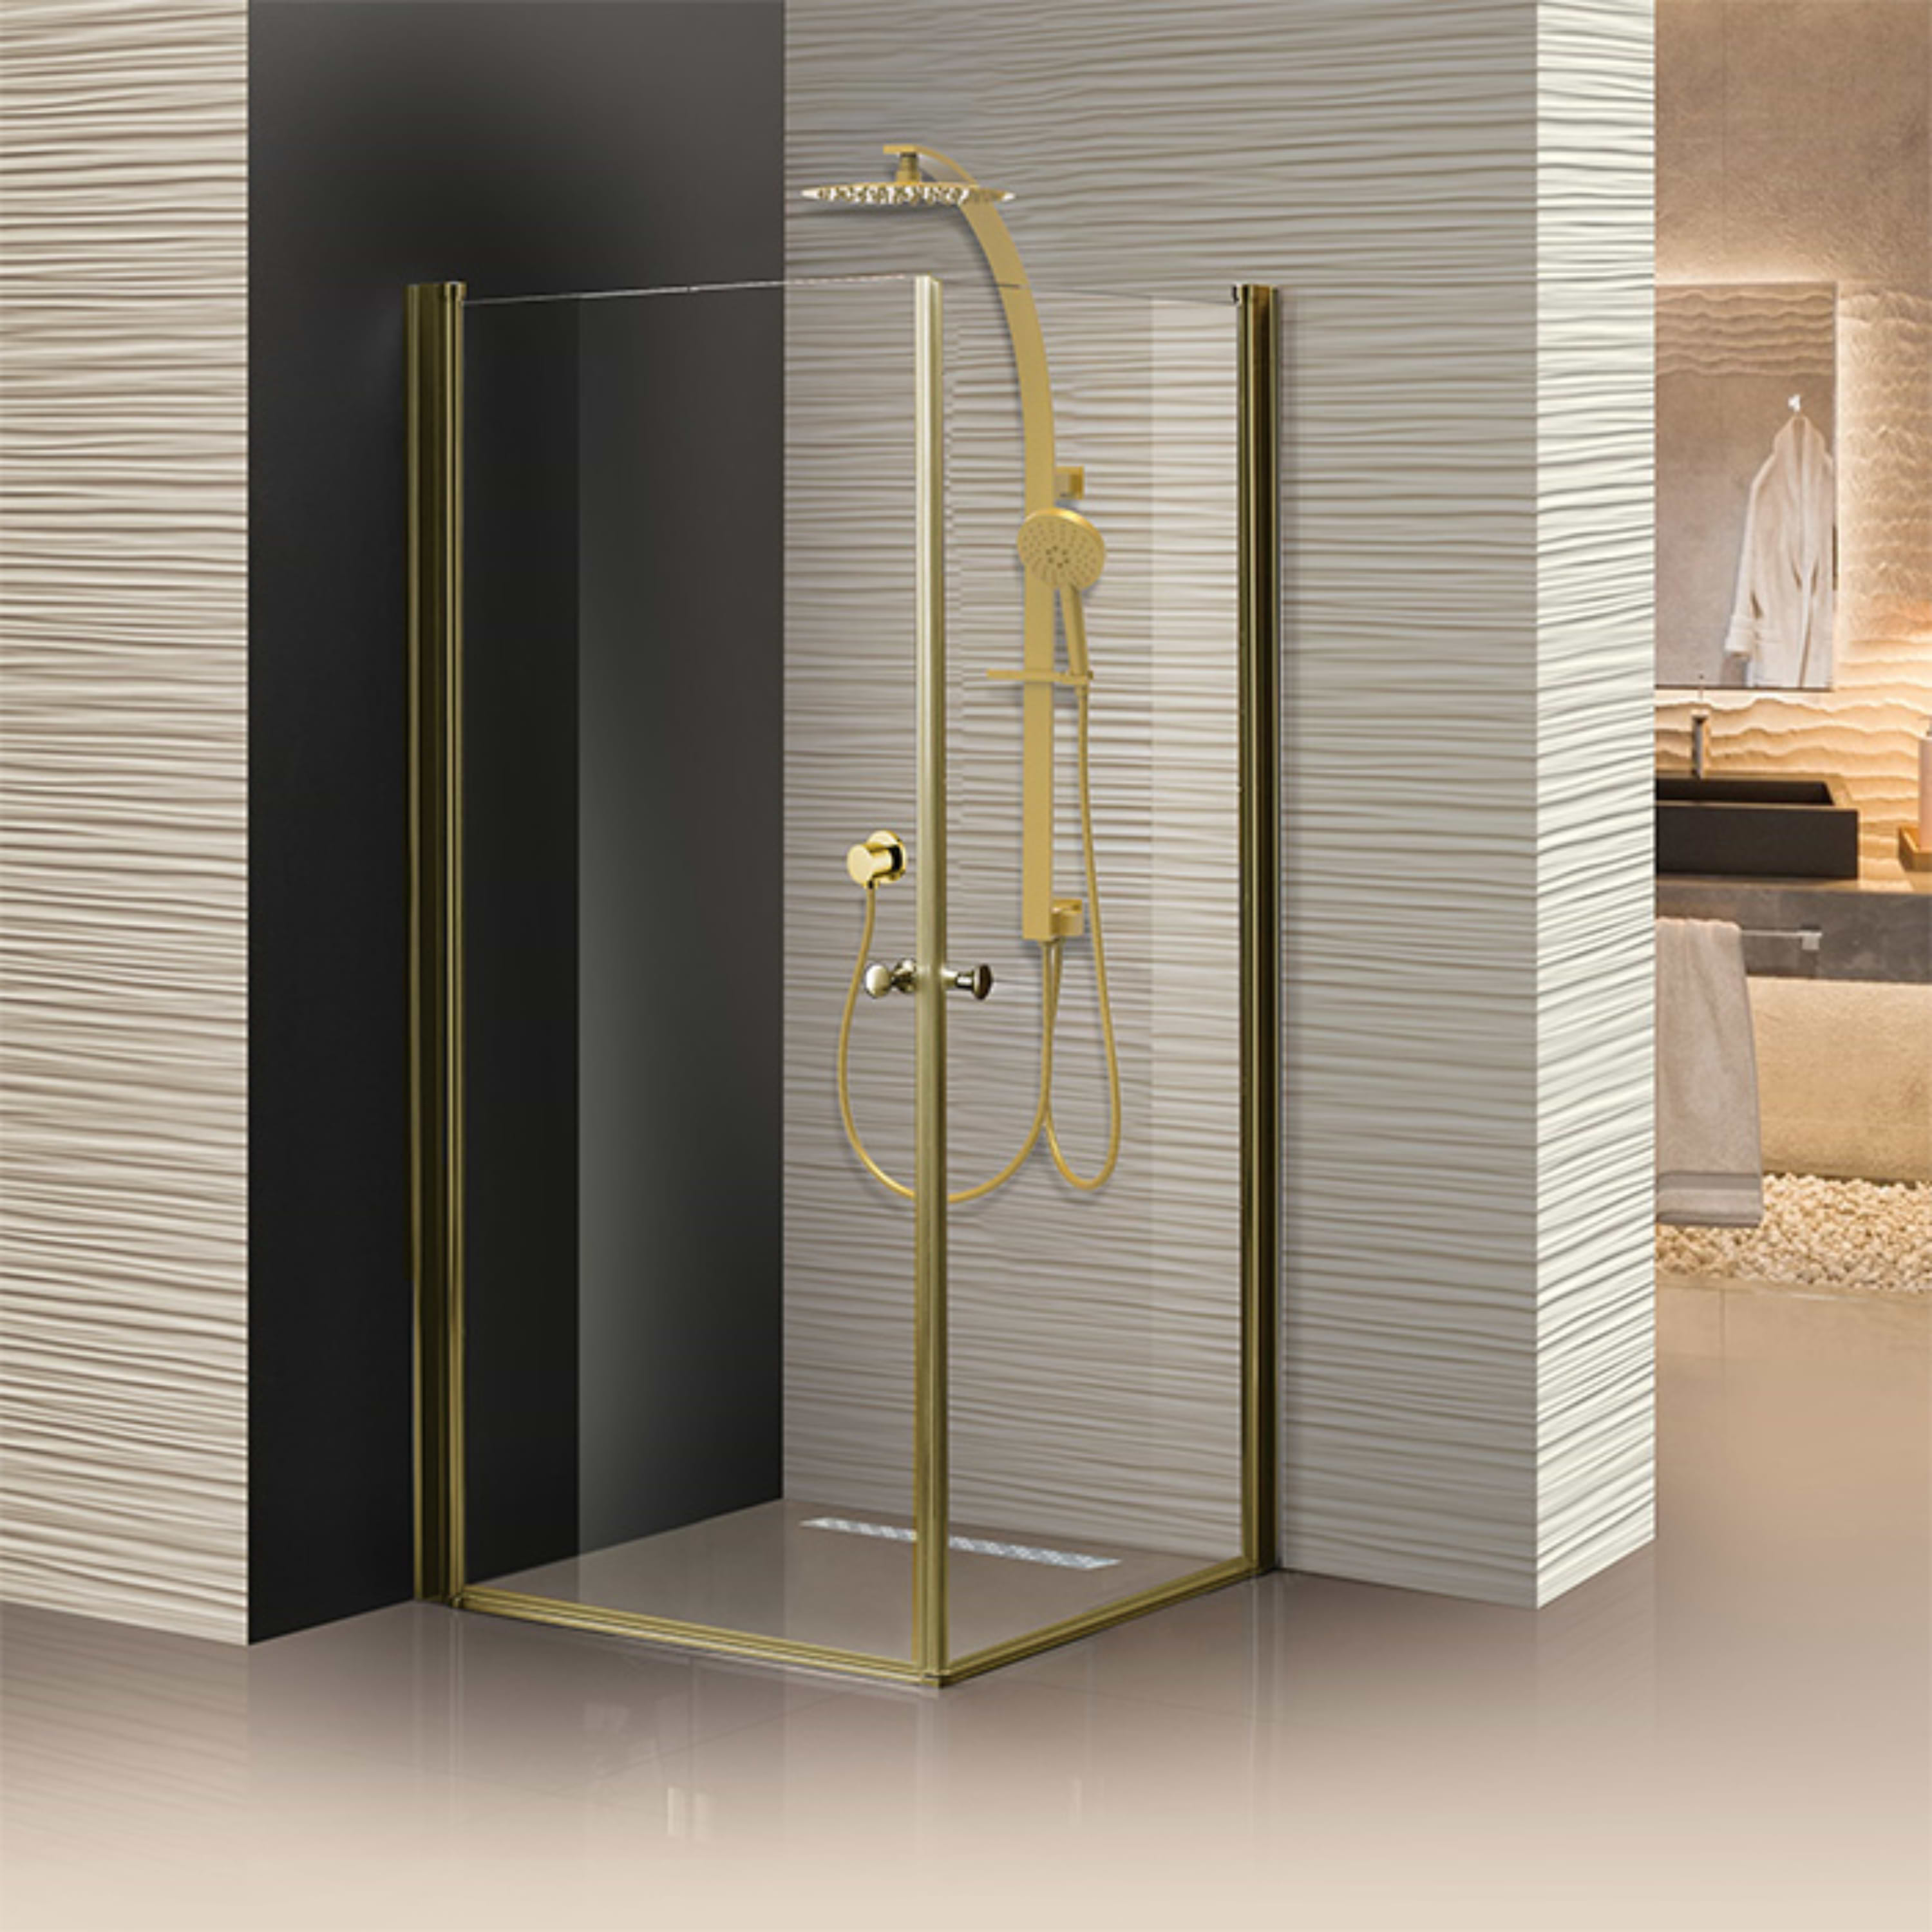 מקלחון פרזול זכוכית שקופה 77-80 ס"מ 405 Matina - צבע זהב